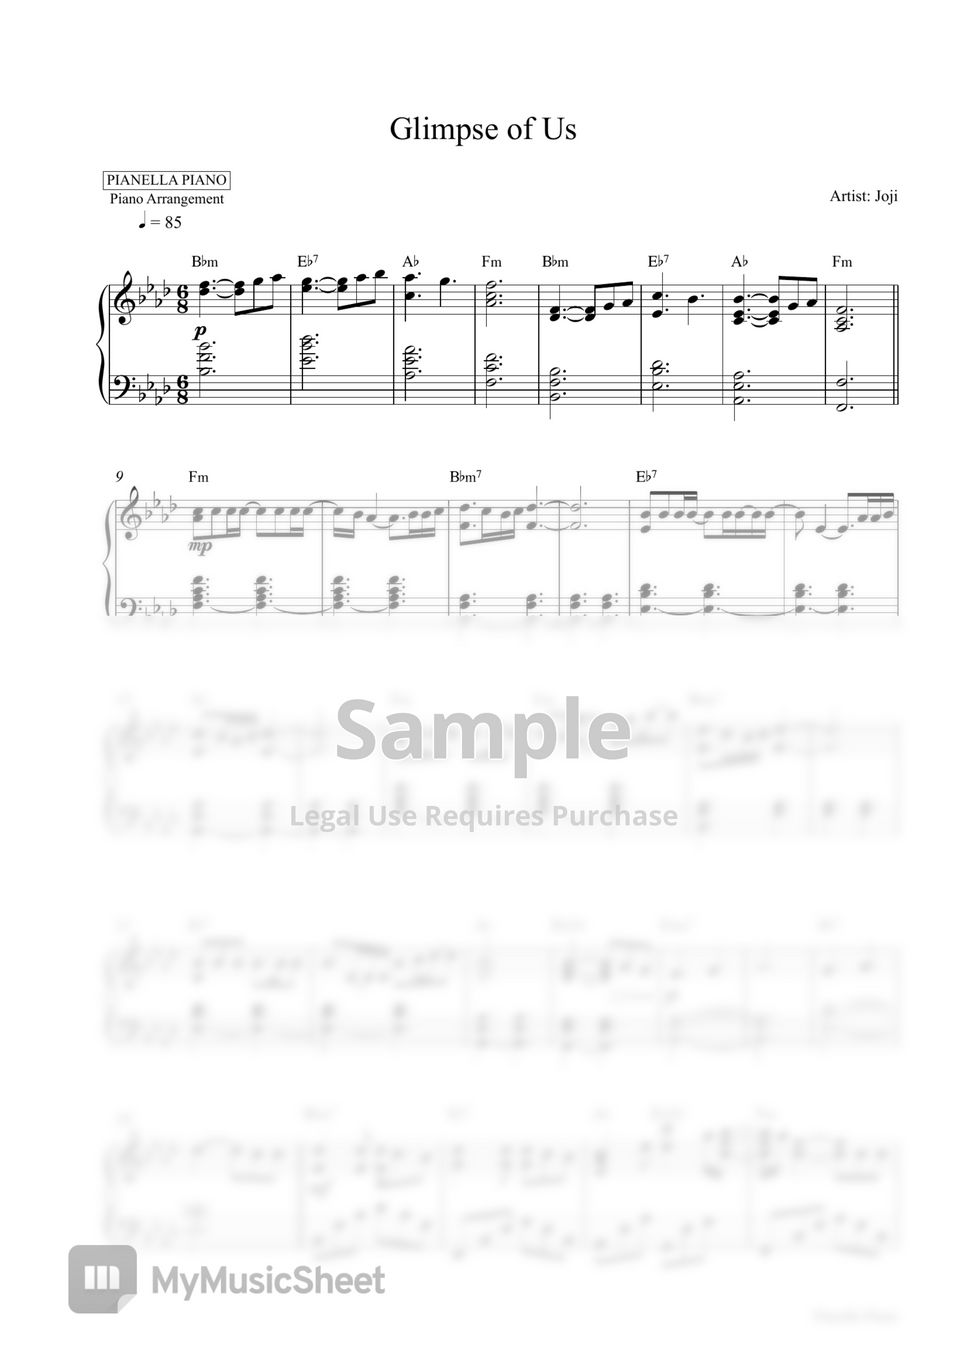 Joji - Glimpse of Us (Piano Sheet | Special Price) by Pianella Piano